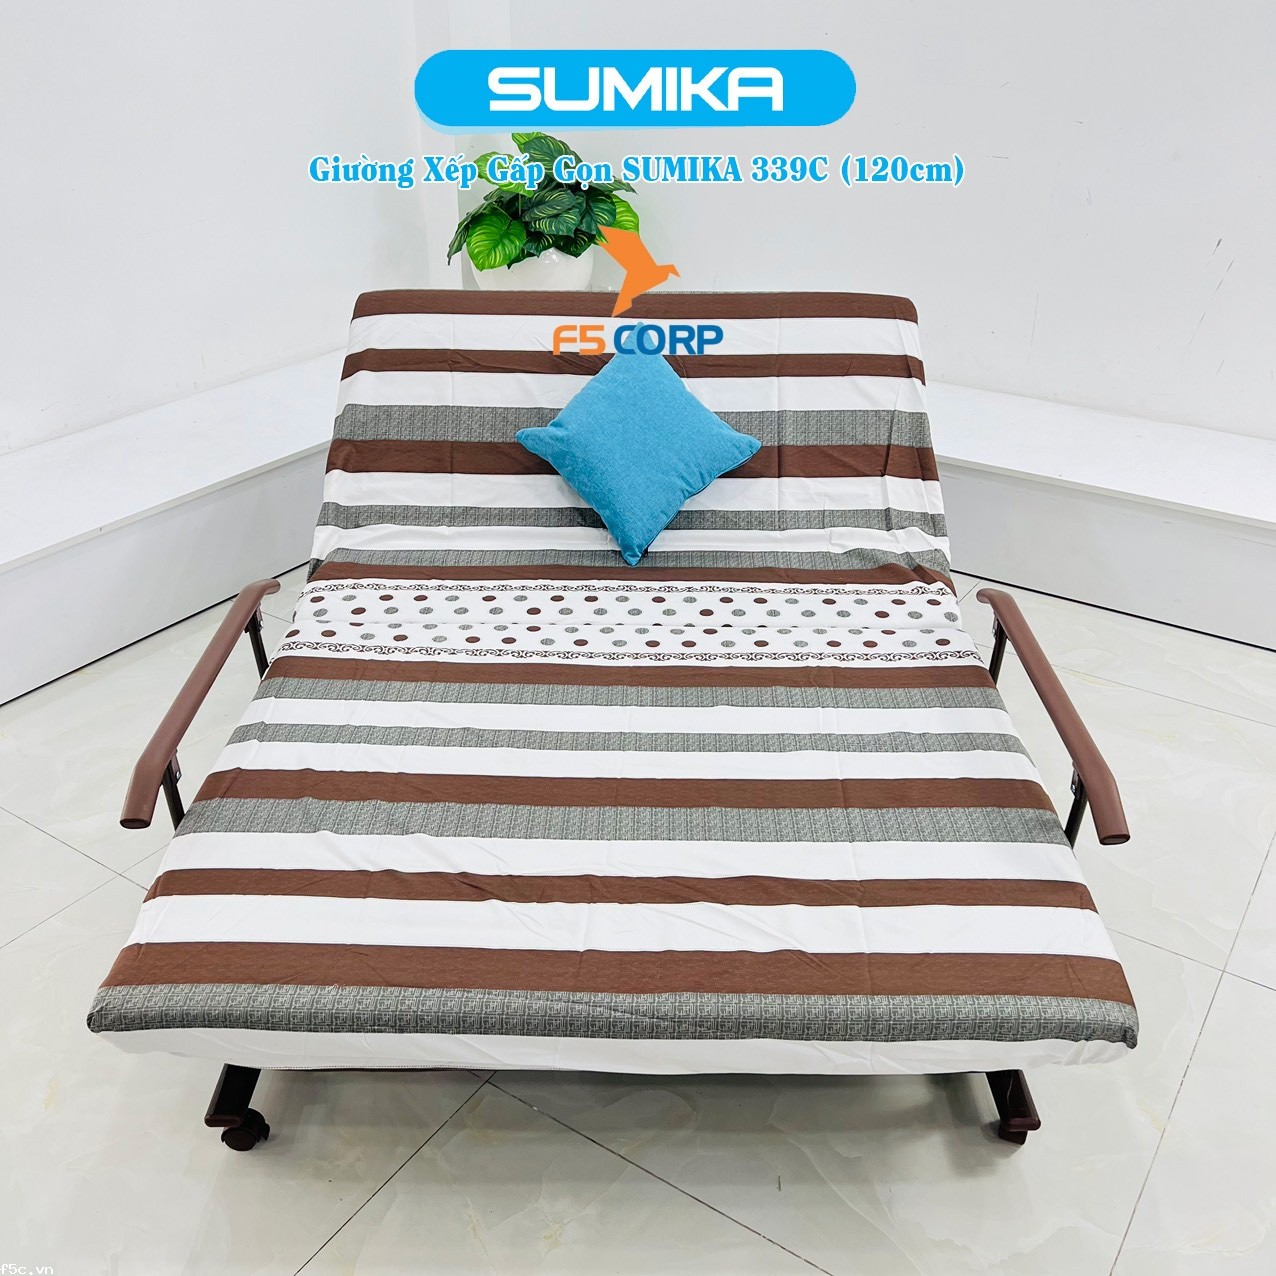 Giường nệm xếp gọn đa năng kiểu dáng Hàn Quốc SUMIKA 339C, rộng 120cm